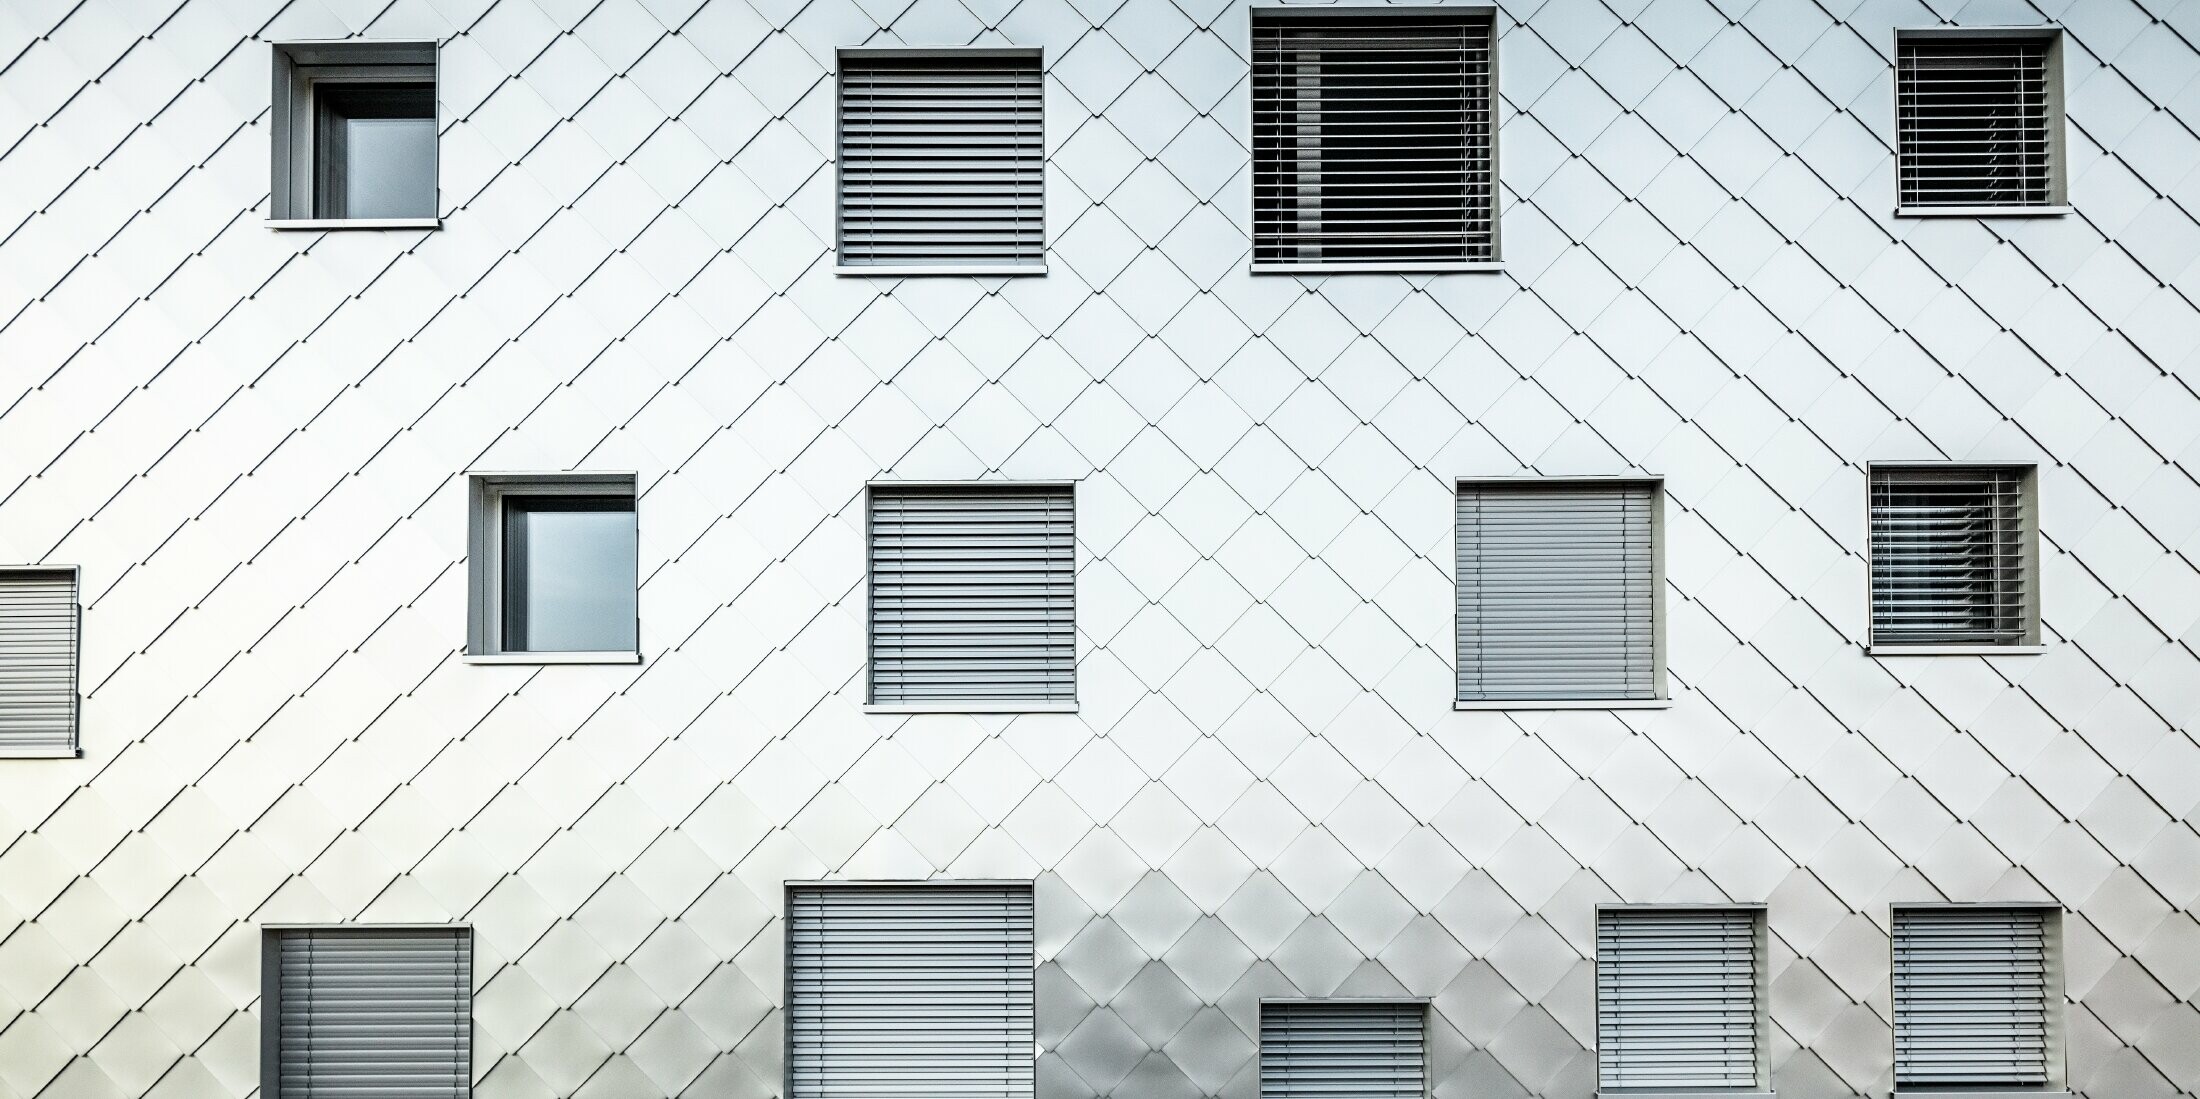 Das Bild zeigt eine Nahaufnahme der Fassade des Solitaire-Hochhauses in Horw, Luzern, das von der Architektin Tilla Theus entworfen wurde. Die Fassade ist mit eloxierten Aluminiumrauten verkleidet, die ein diagonales Muster bilden. Die Fenster sind unregelmäßig angeordnet und tragen zur einzigartigen Optik des Gebäudes bei. Einige Fenster sind mit Jalousien ausgestattet. Die Oberfläche der Aluminiumrauten reflektiert die Umgebung und verleiht der Fassade eine dynamische und glänzende Erscheinung.